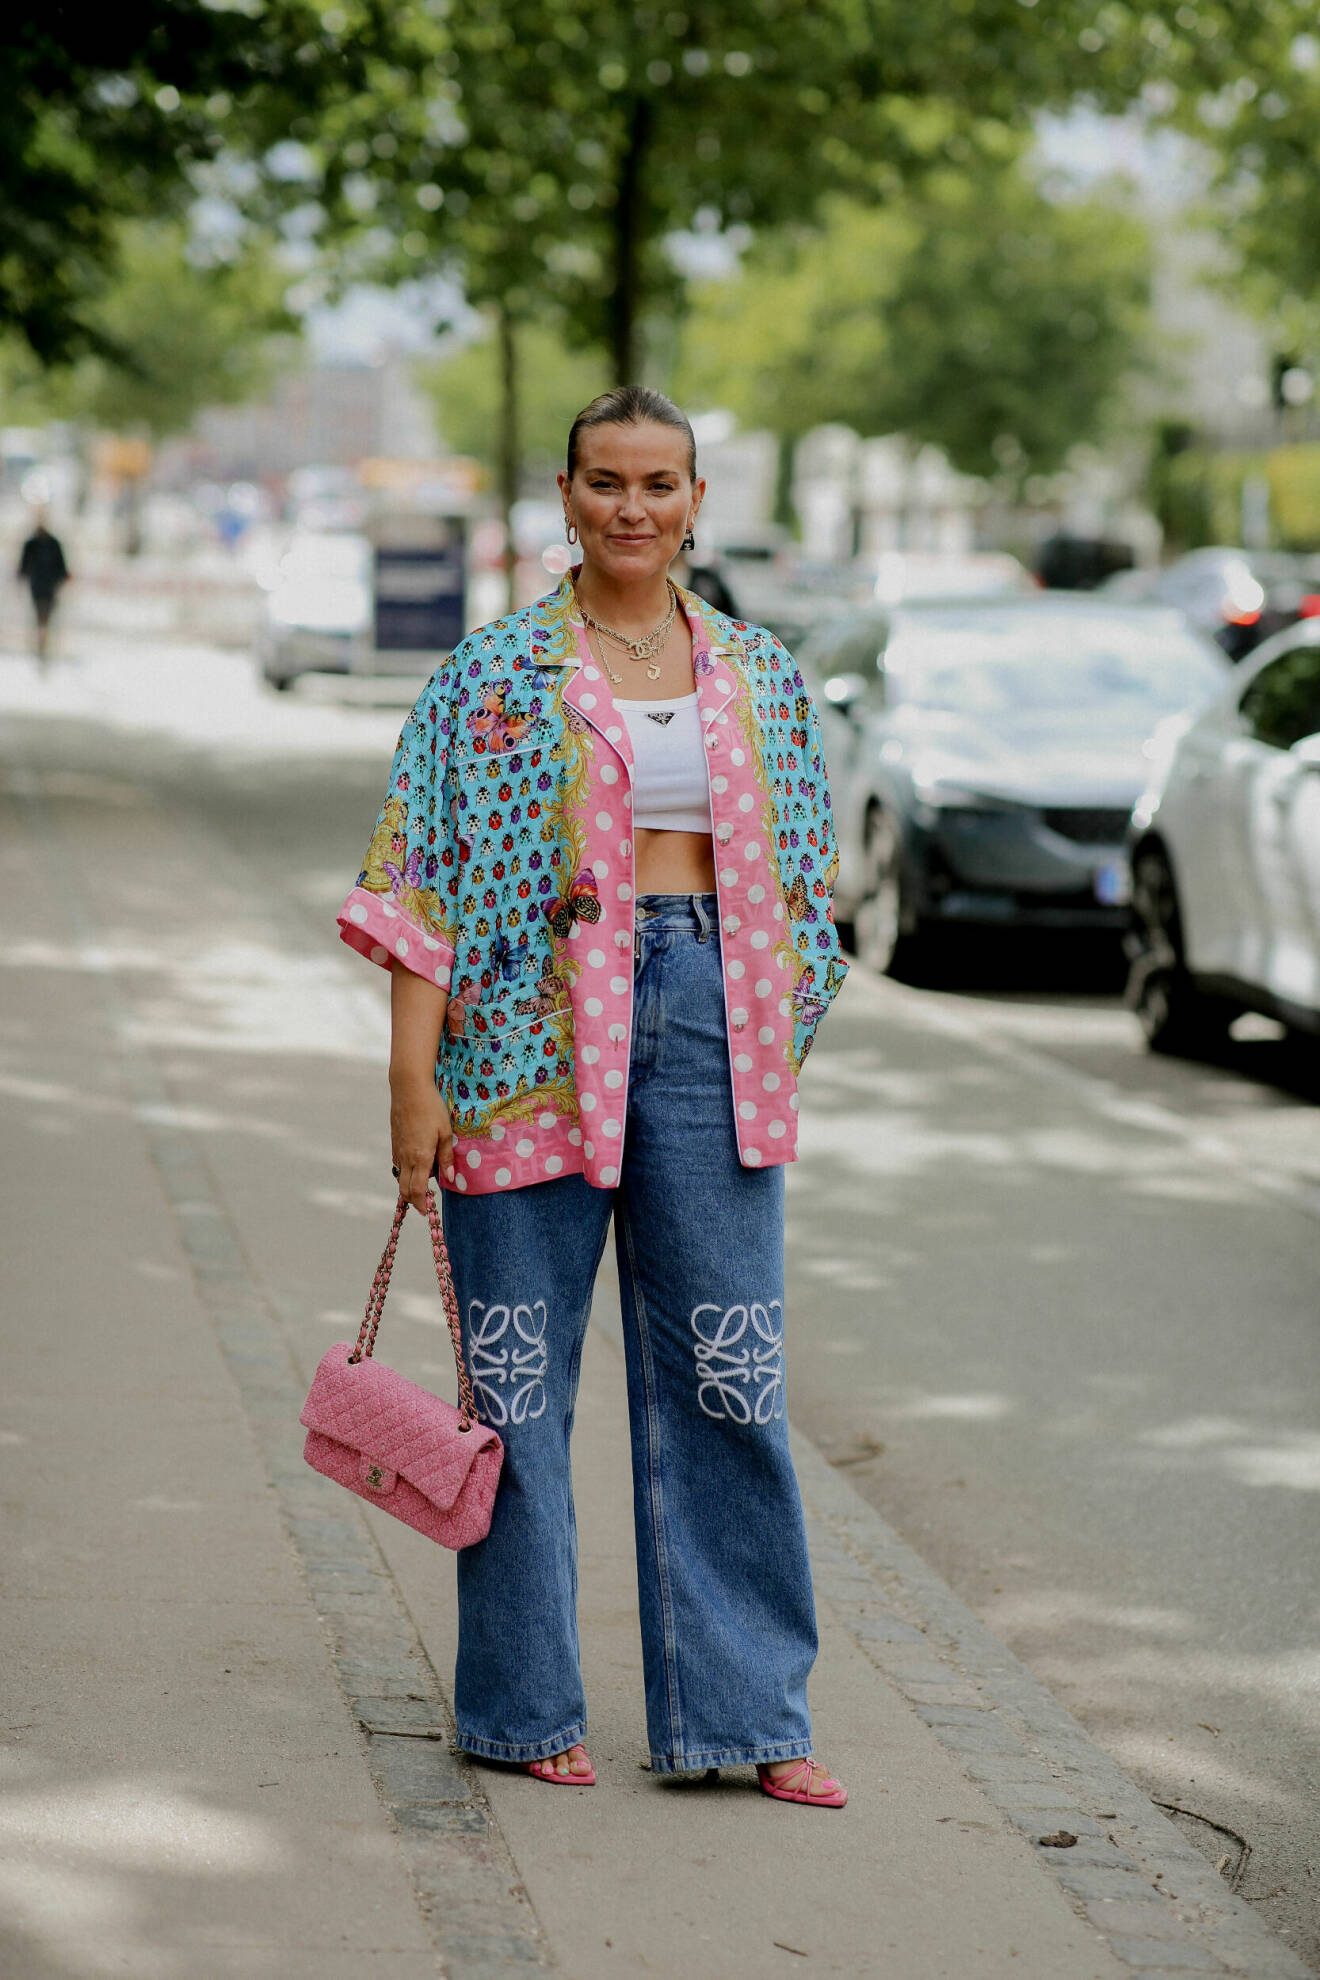 Janka Polliani i en outfit med en mönstrad jacka i blått, grönt och rosa, rosa Chanelväska, rosa klackar och vida jeans från Loewe